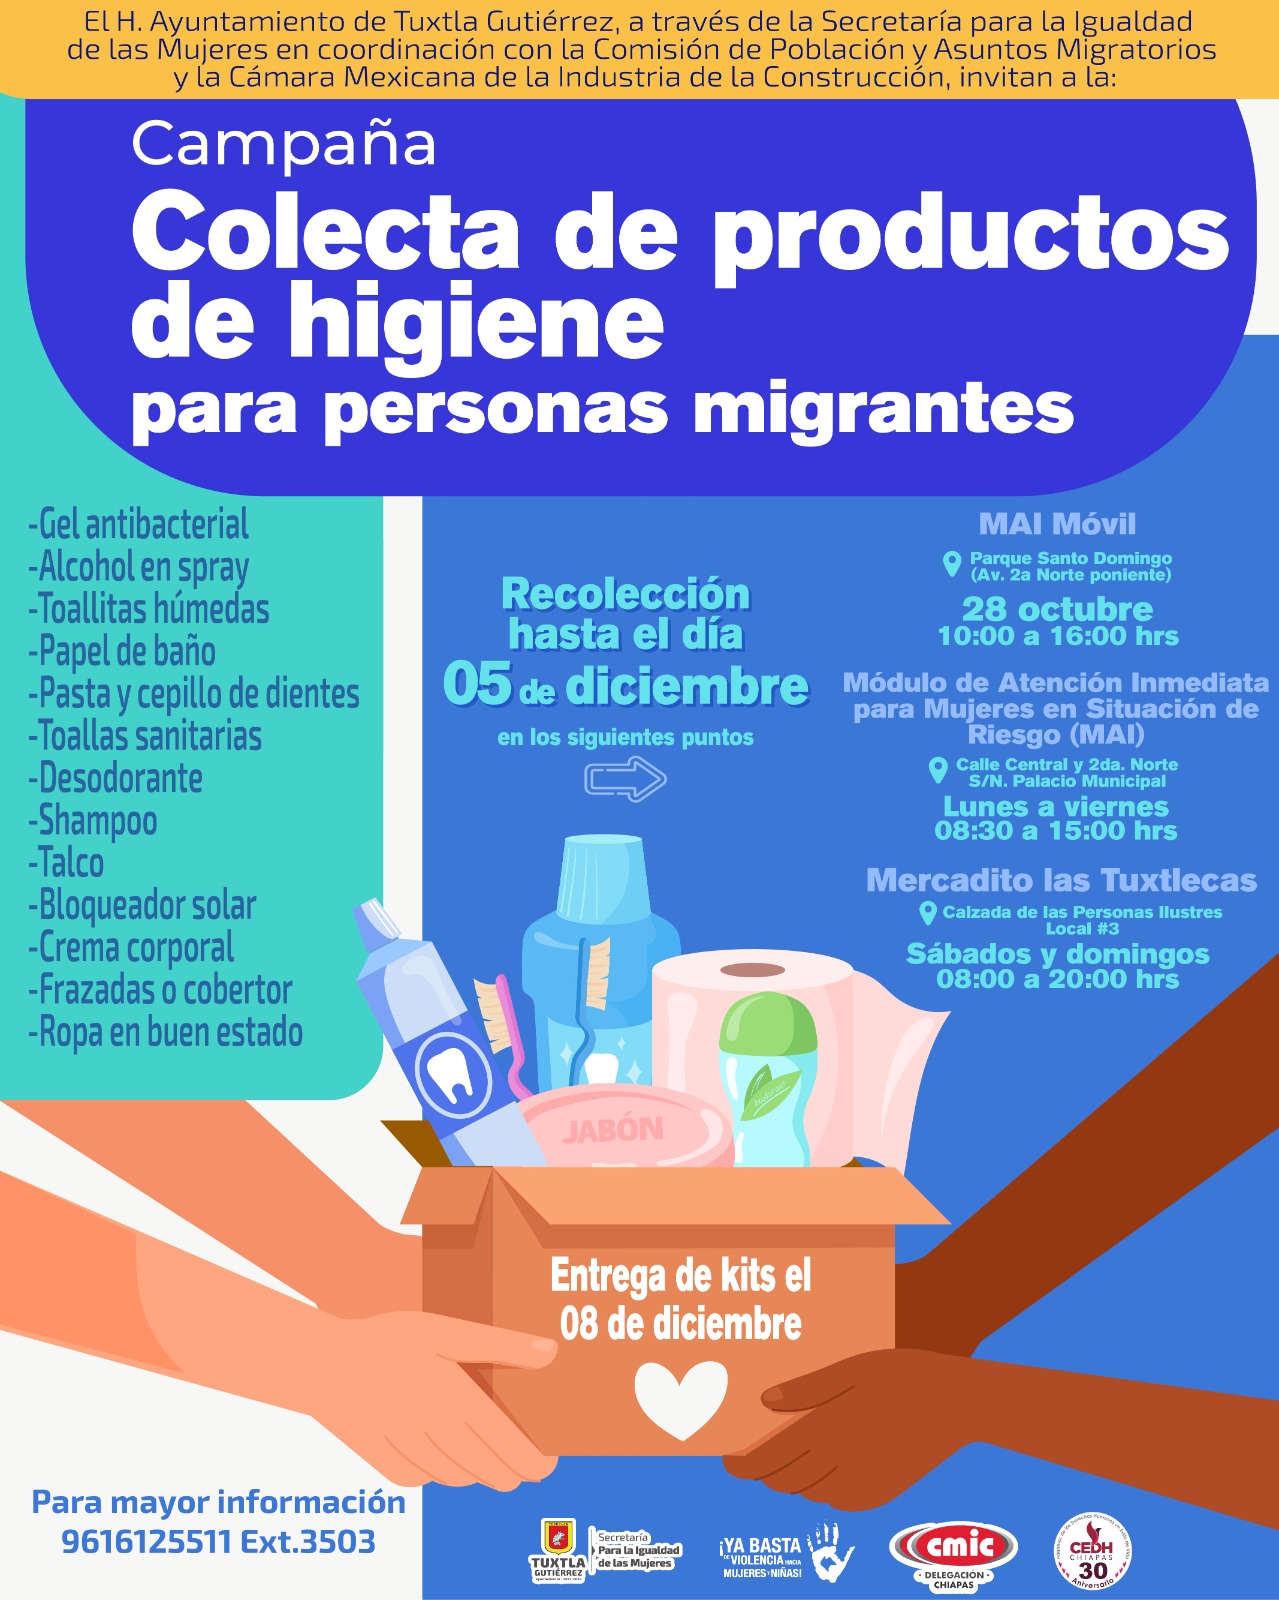 Colecta de productos de higiene para migrantes organizada por el Ayuntamiento de TGZ